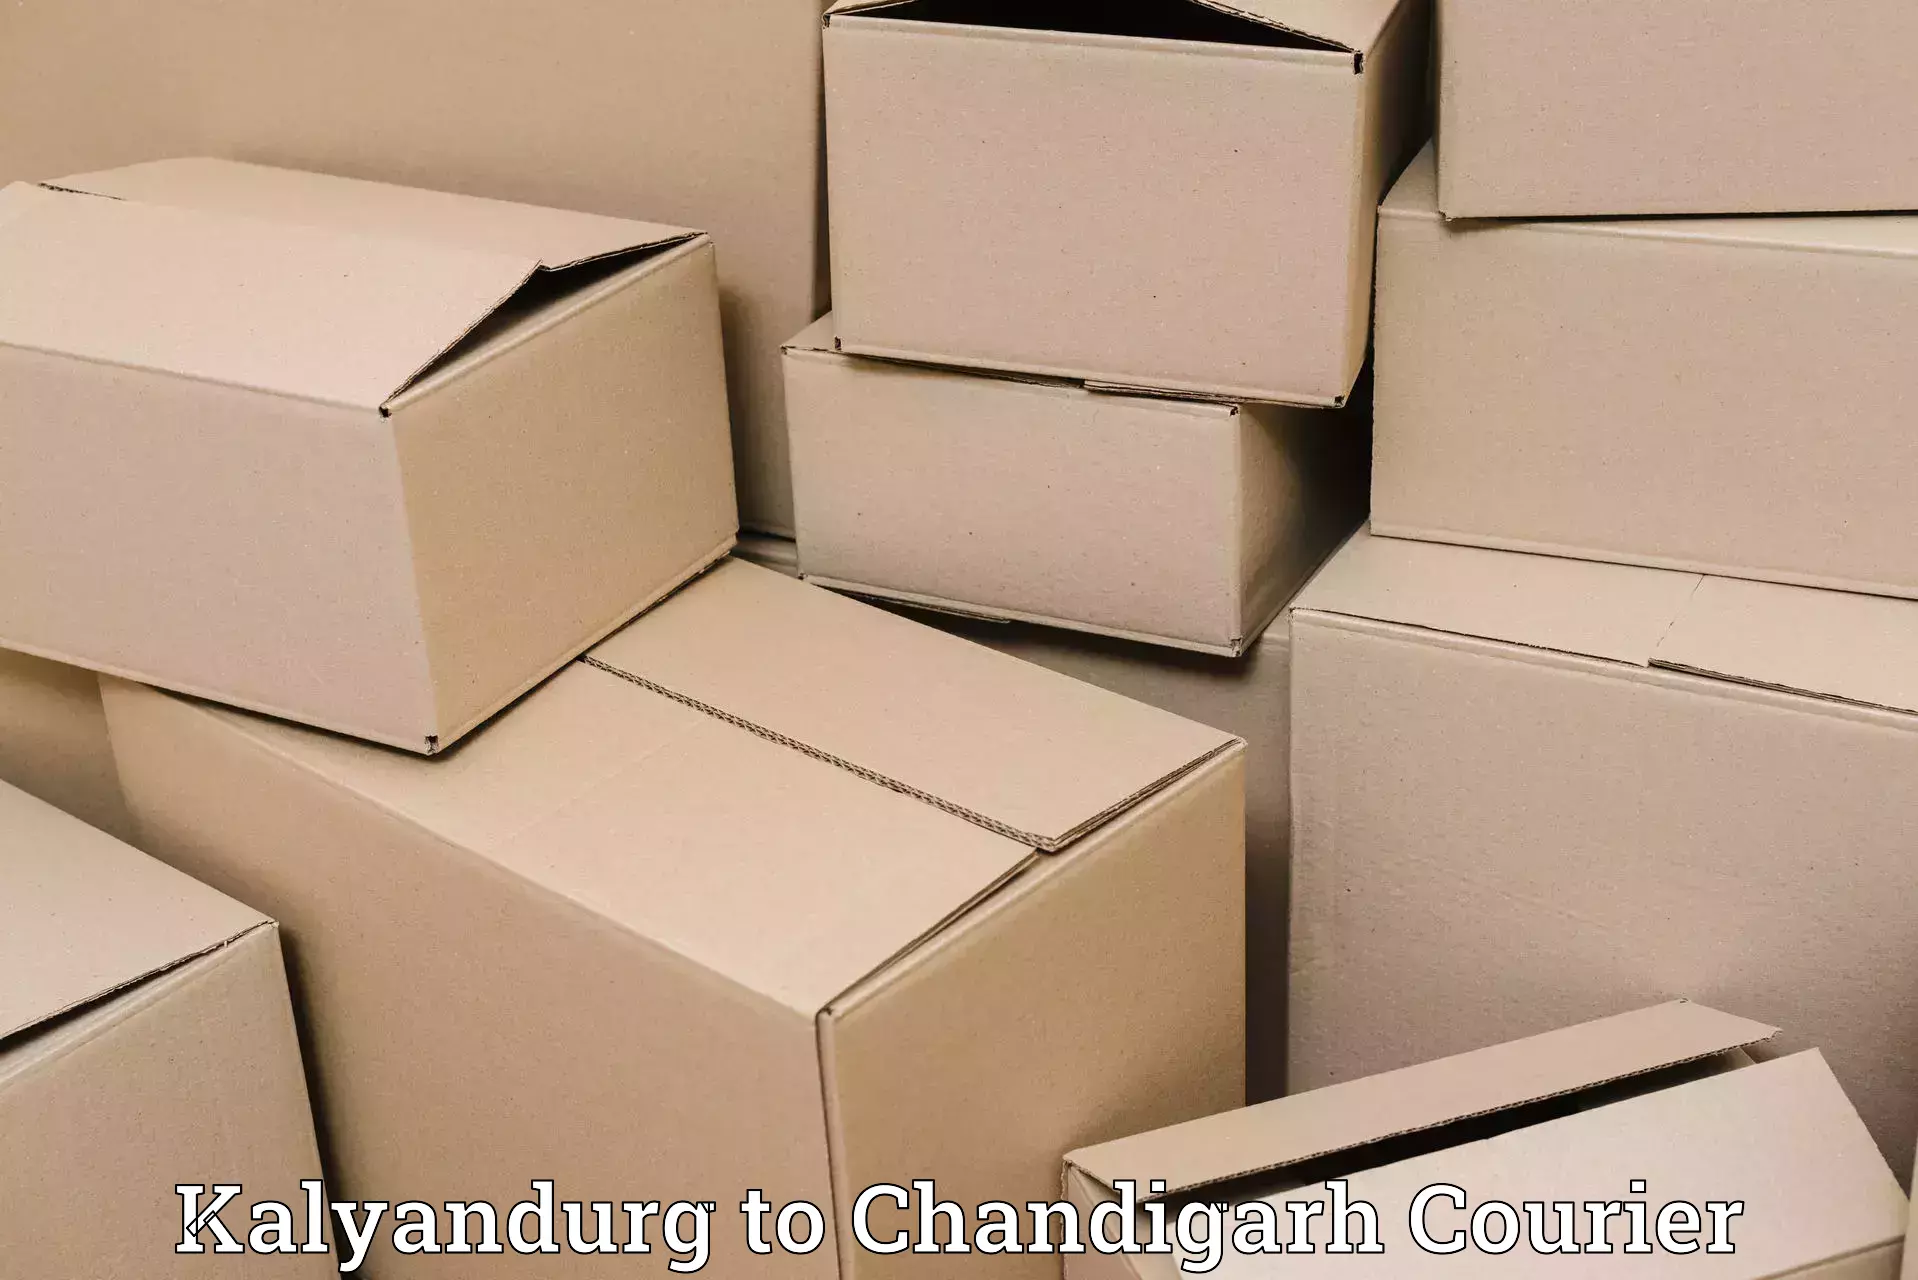 Quick dispatch service Kalyandurg to Chandigarh